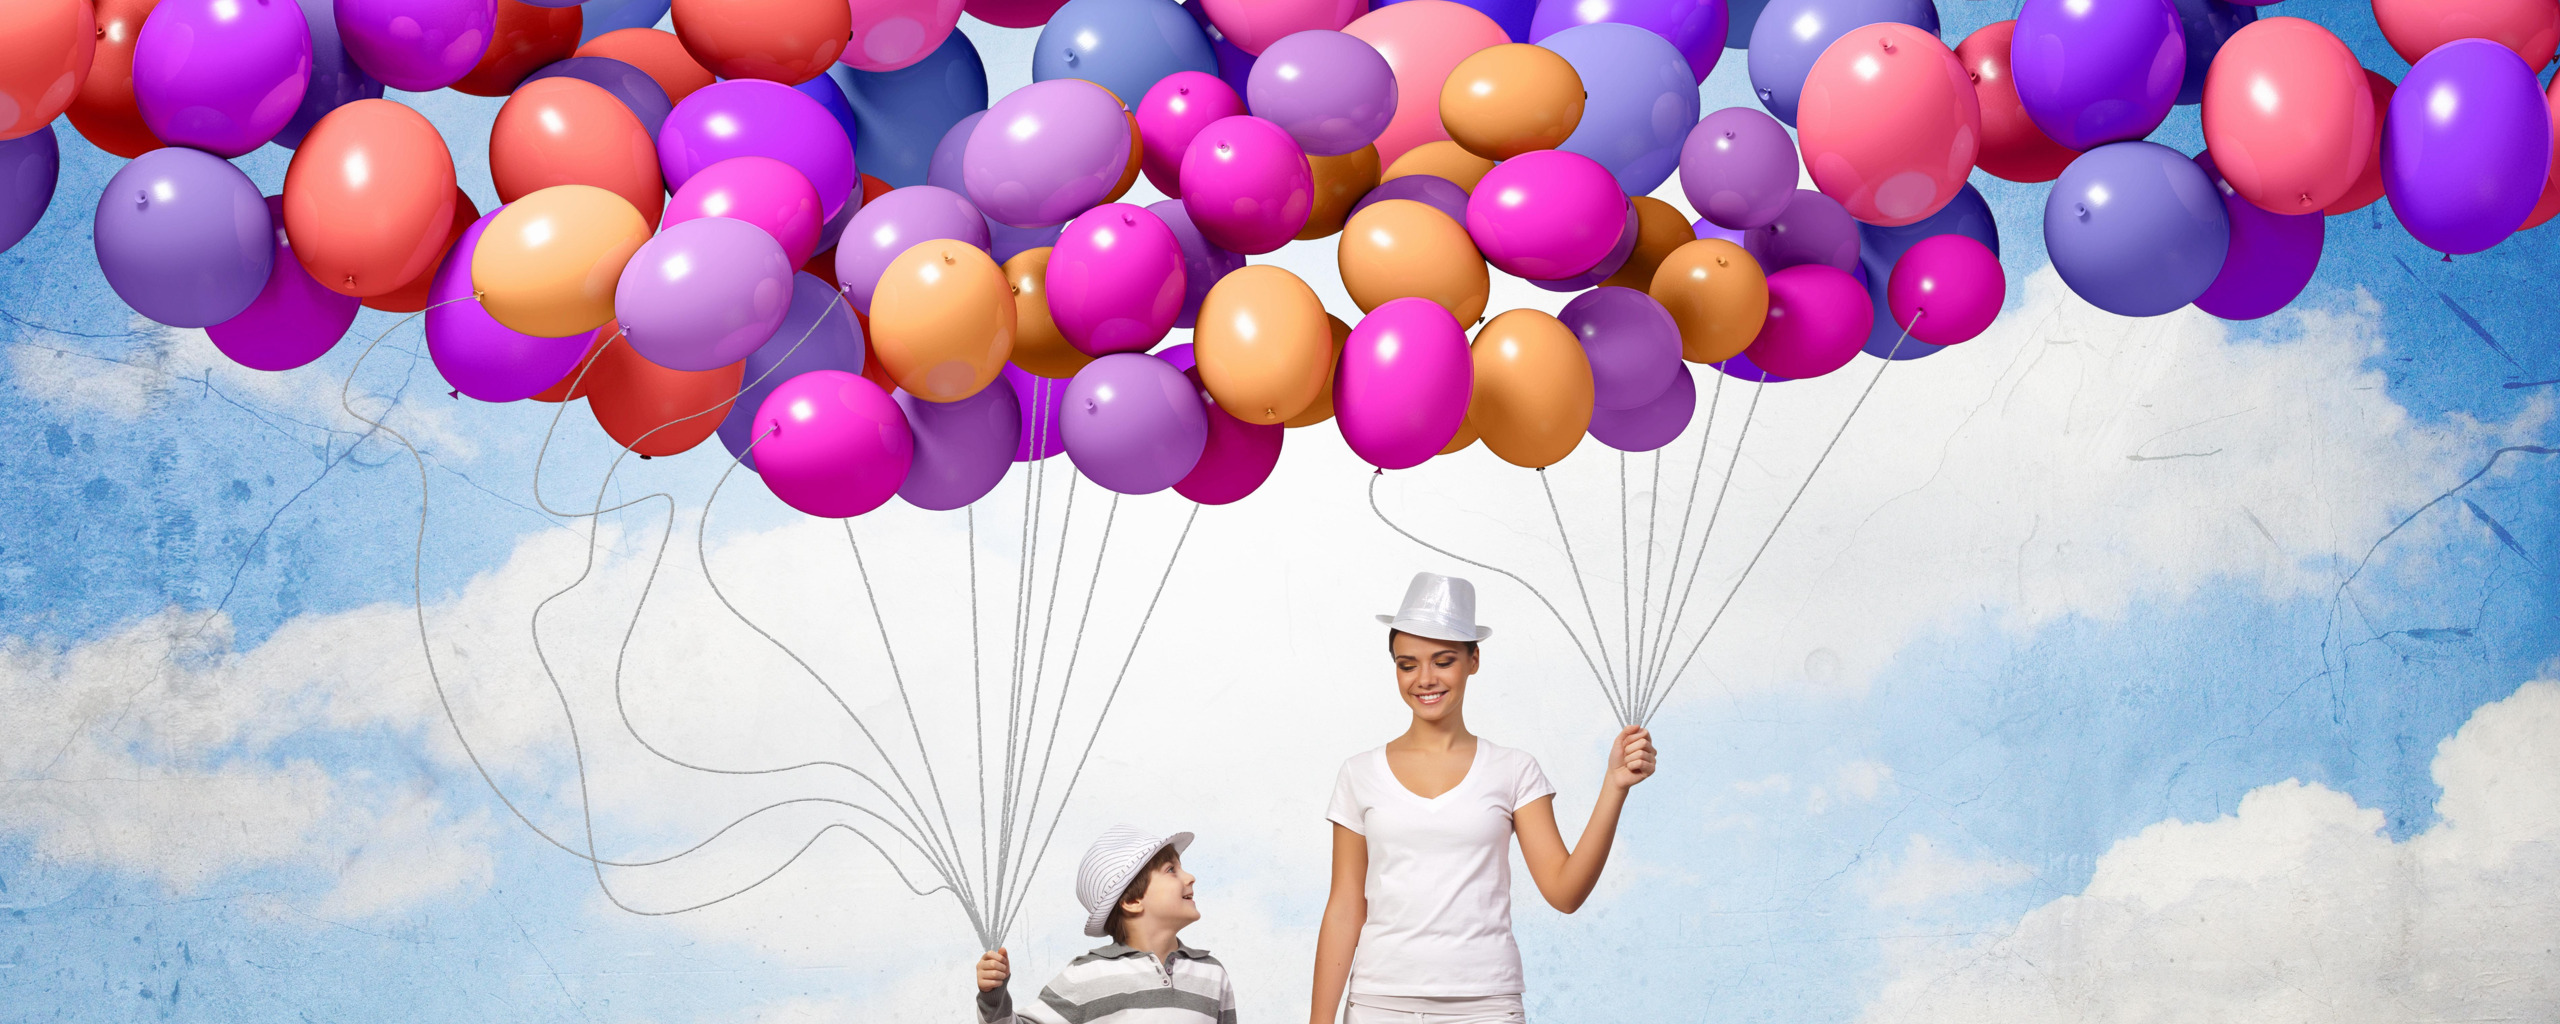 Бизнес воздушных шаров. Воздушные шары. Фон с воздушными шарами. Воздушный шар. Баннер с шарами.